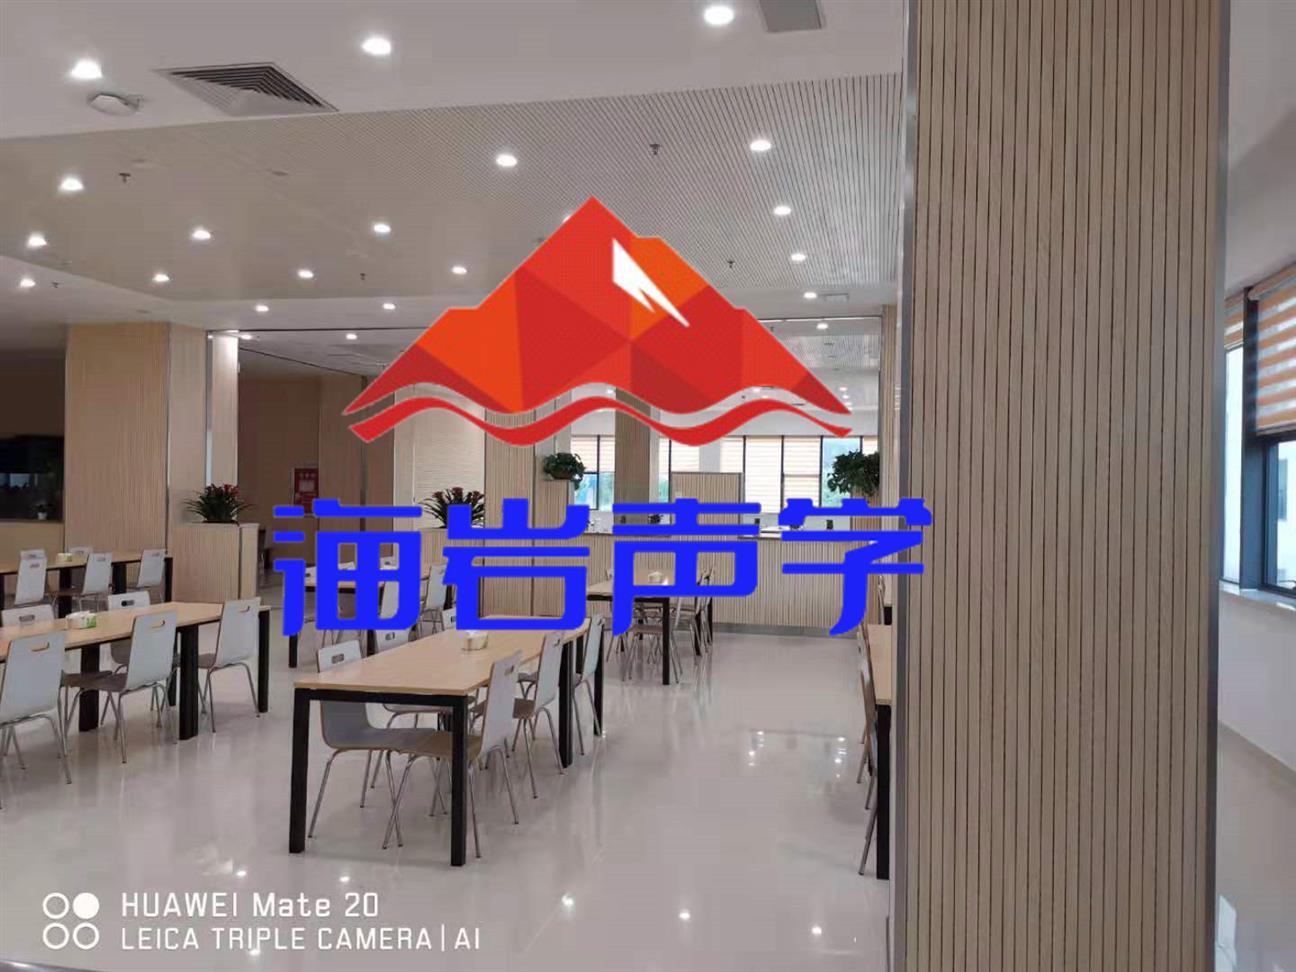 安康餐厅噪声处理 四川海岩声学科技有限公司